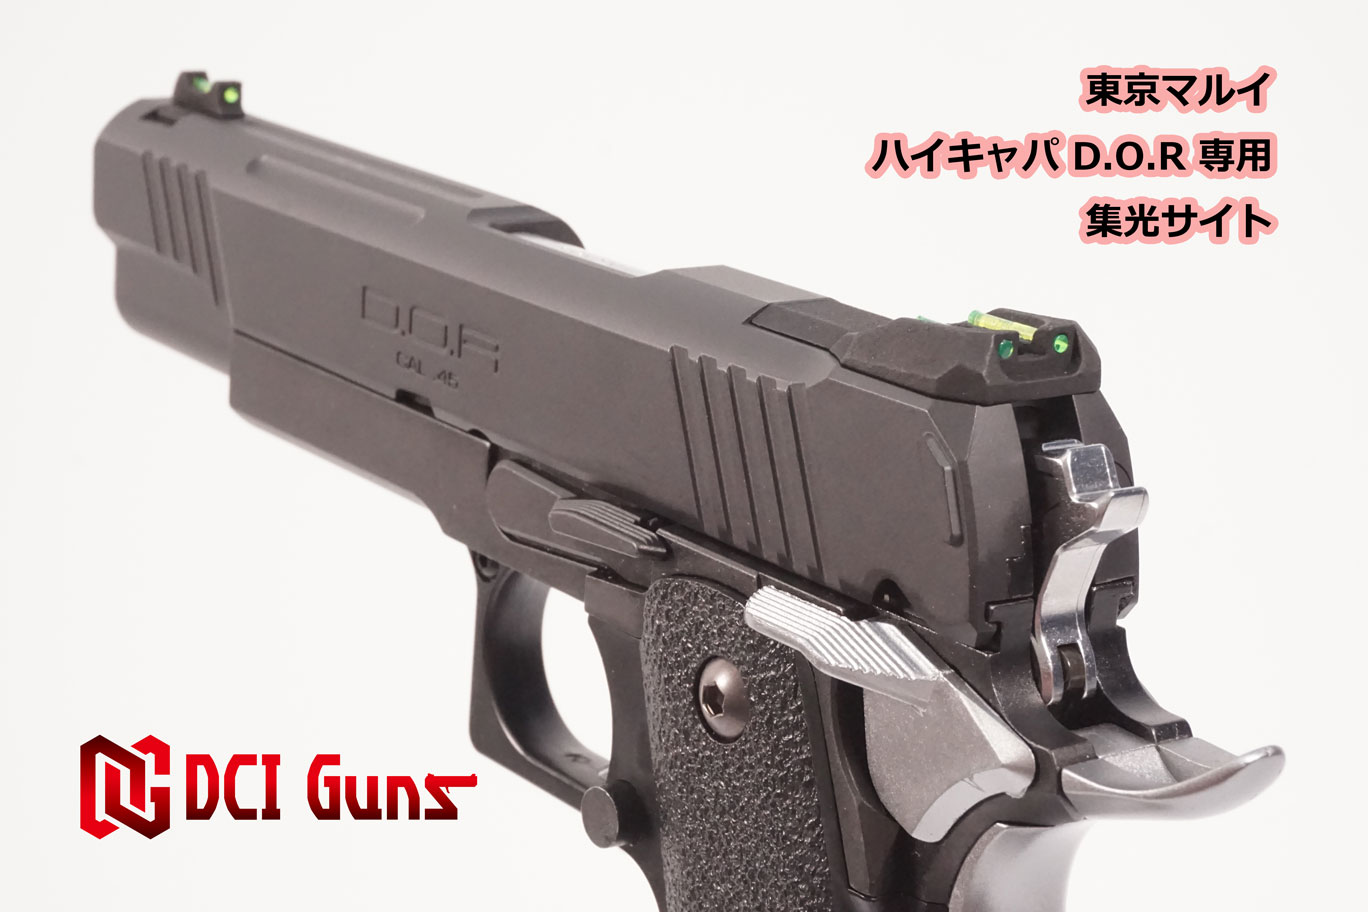 集光サイト iM 東京マルイ ハイキャパD.O.R用 | DCI Guns 公式直販ストア